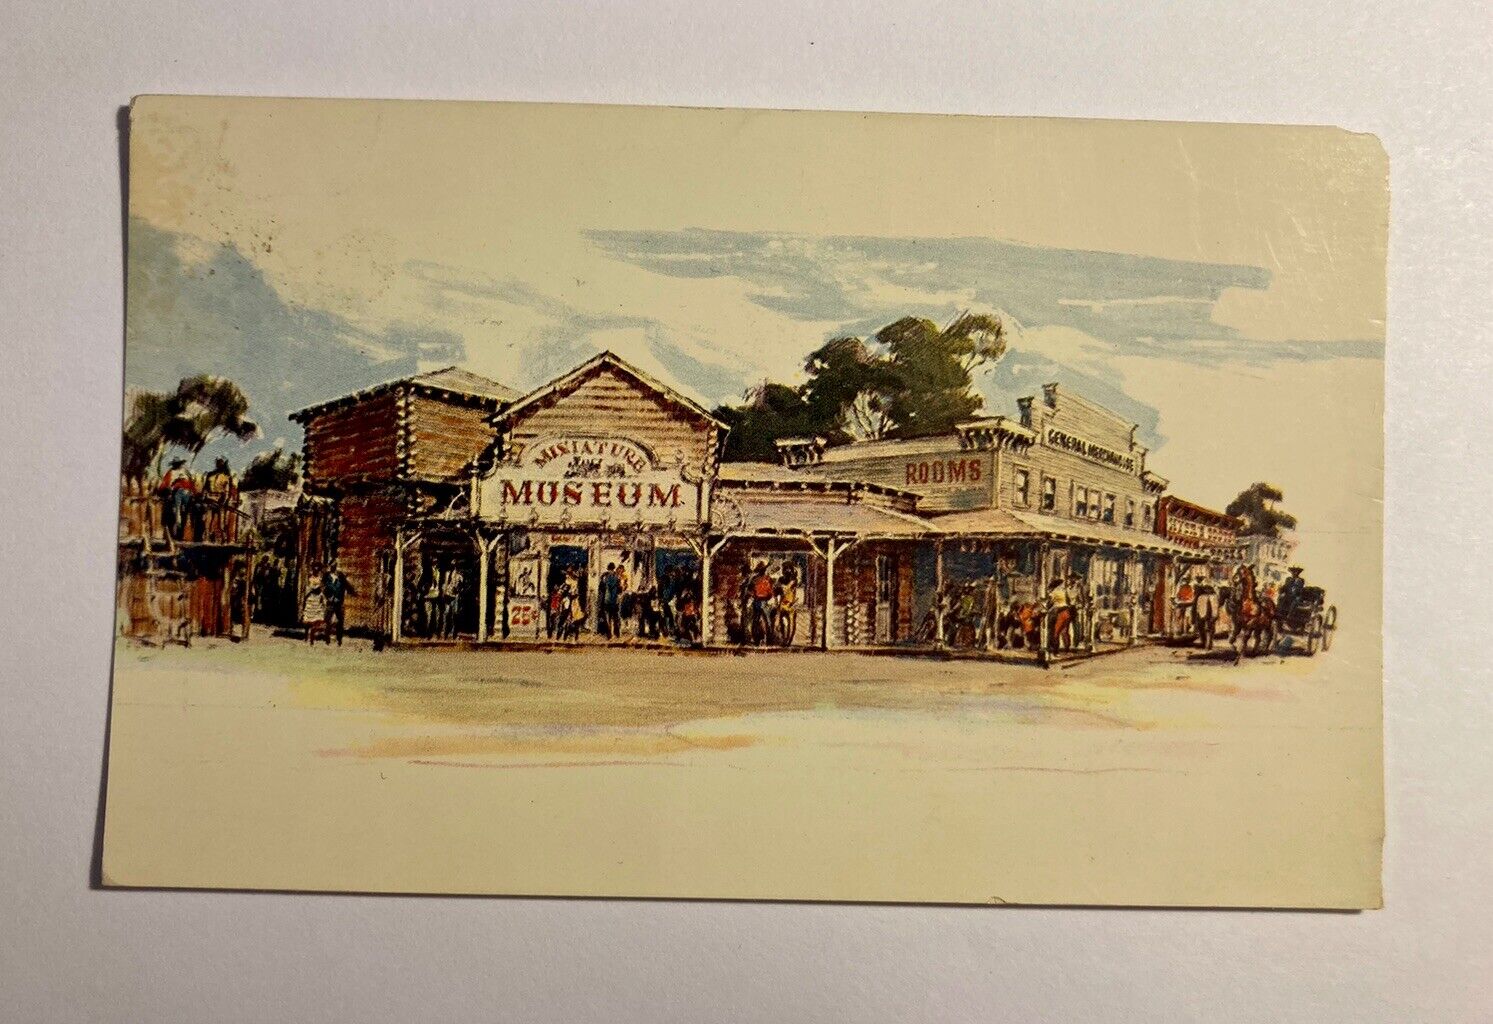 Disneyland Anaheim Davy Crockett Miniature Museum Frontierland Vtg Postcard 1955